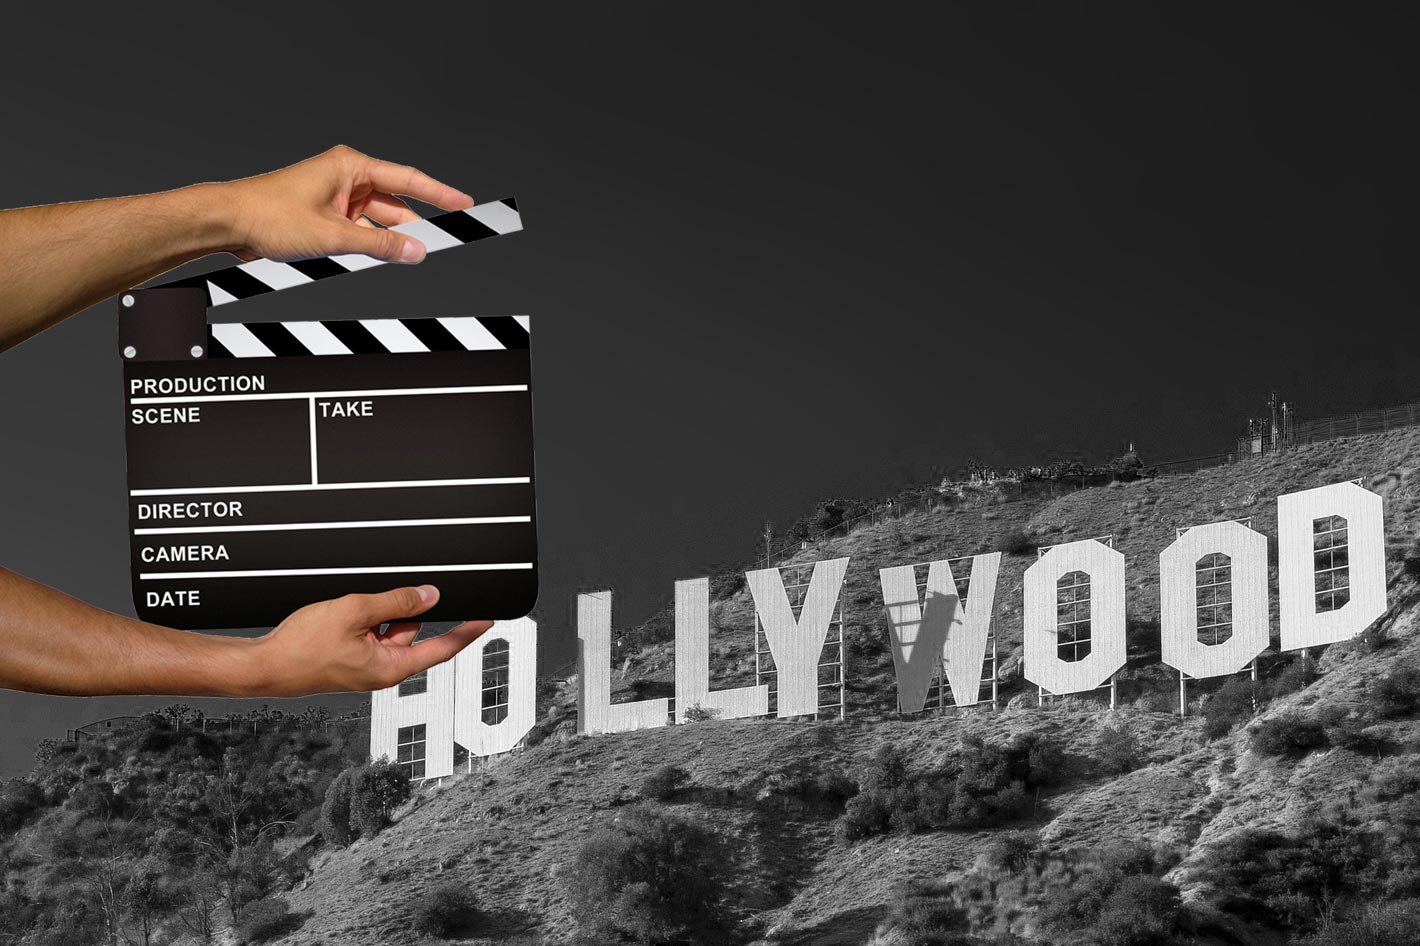 هوليوود تعلن استئناف إنتاجها السينمائي والتلفزيوني بشروط جديدة